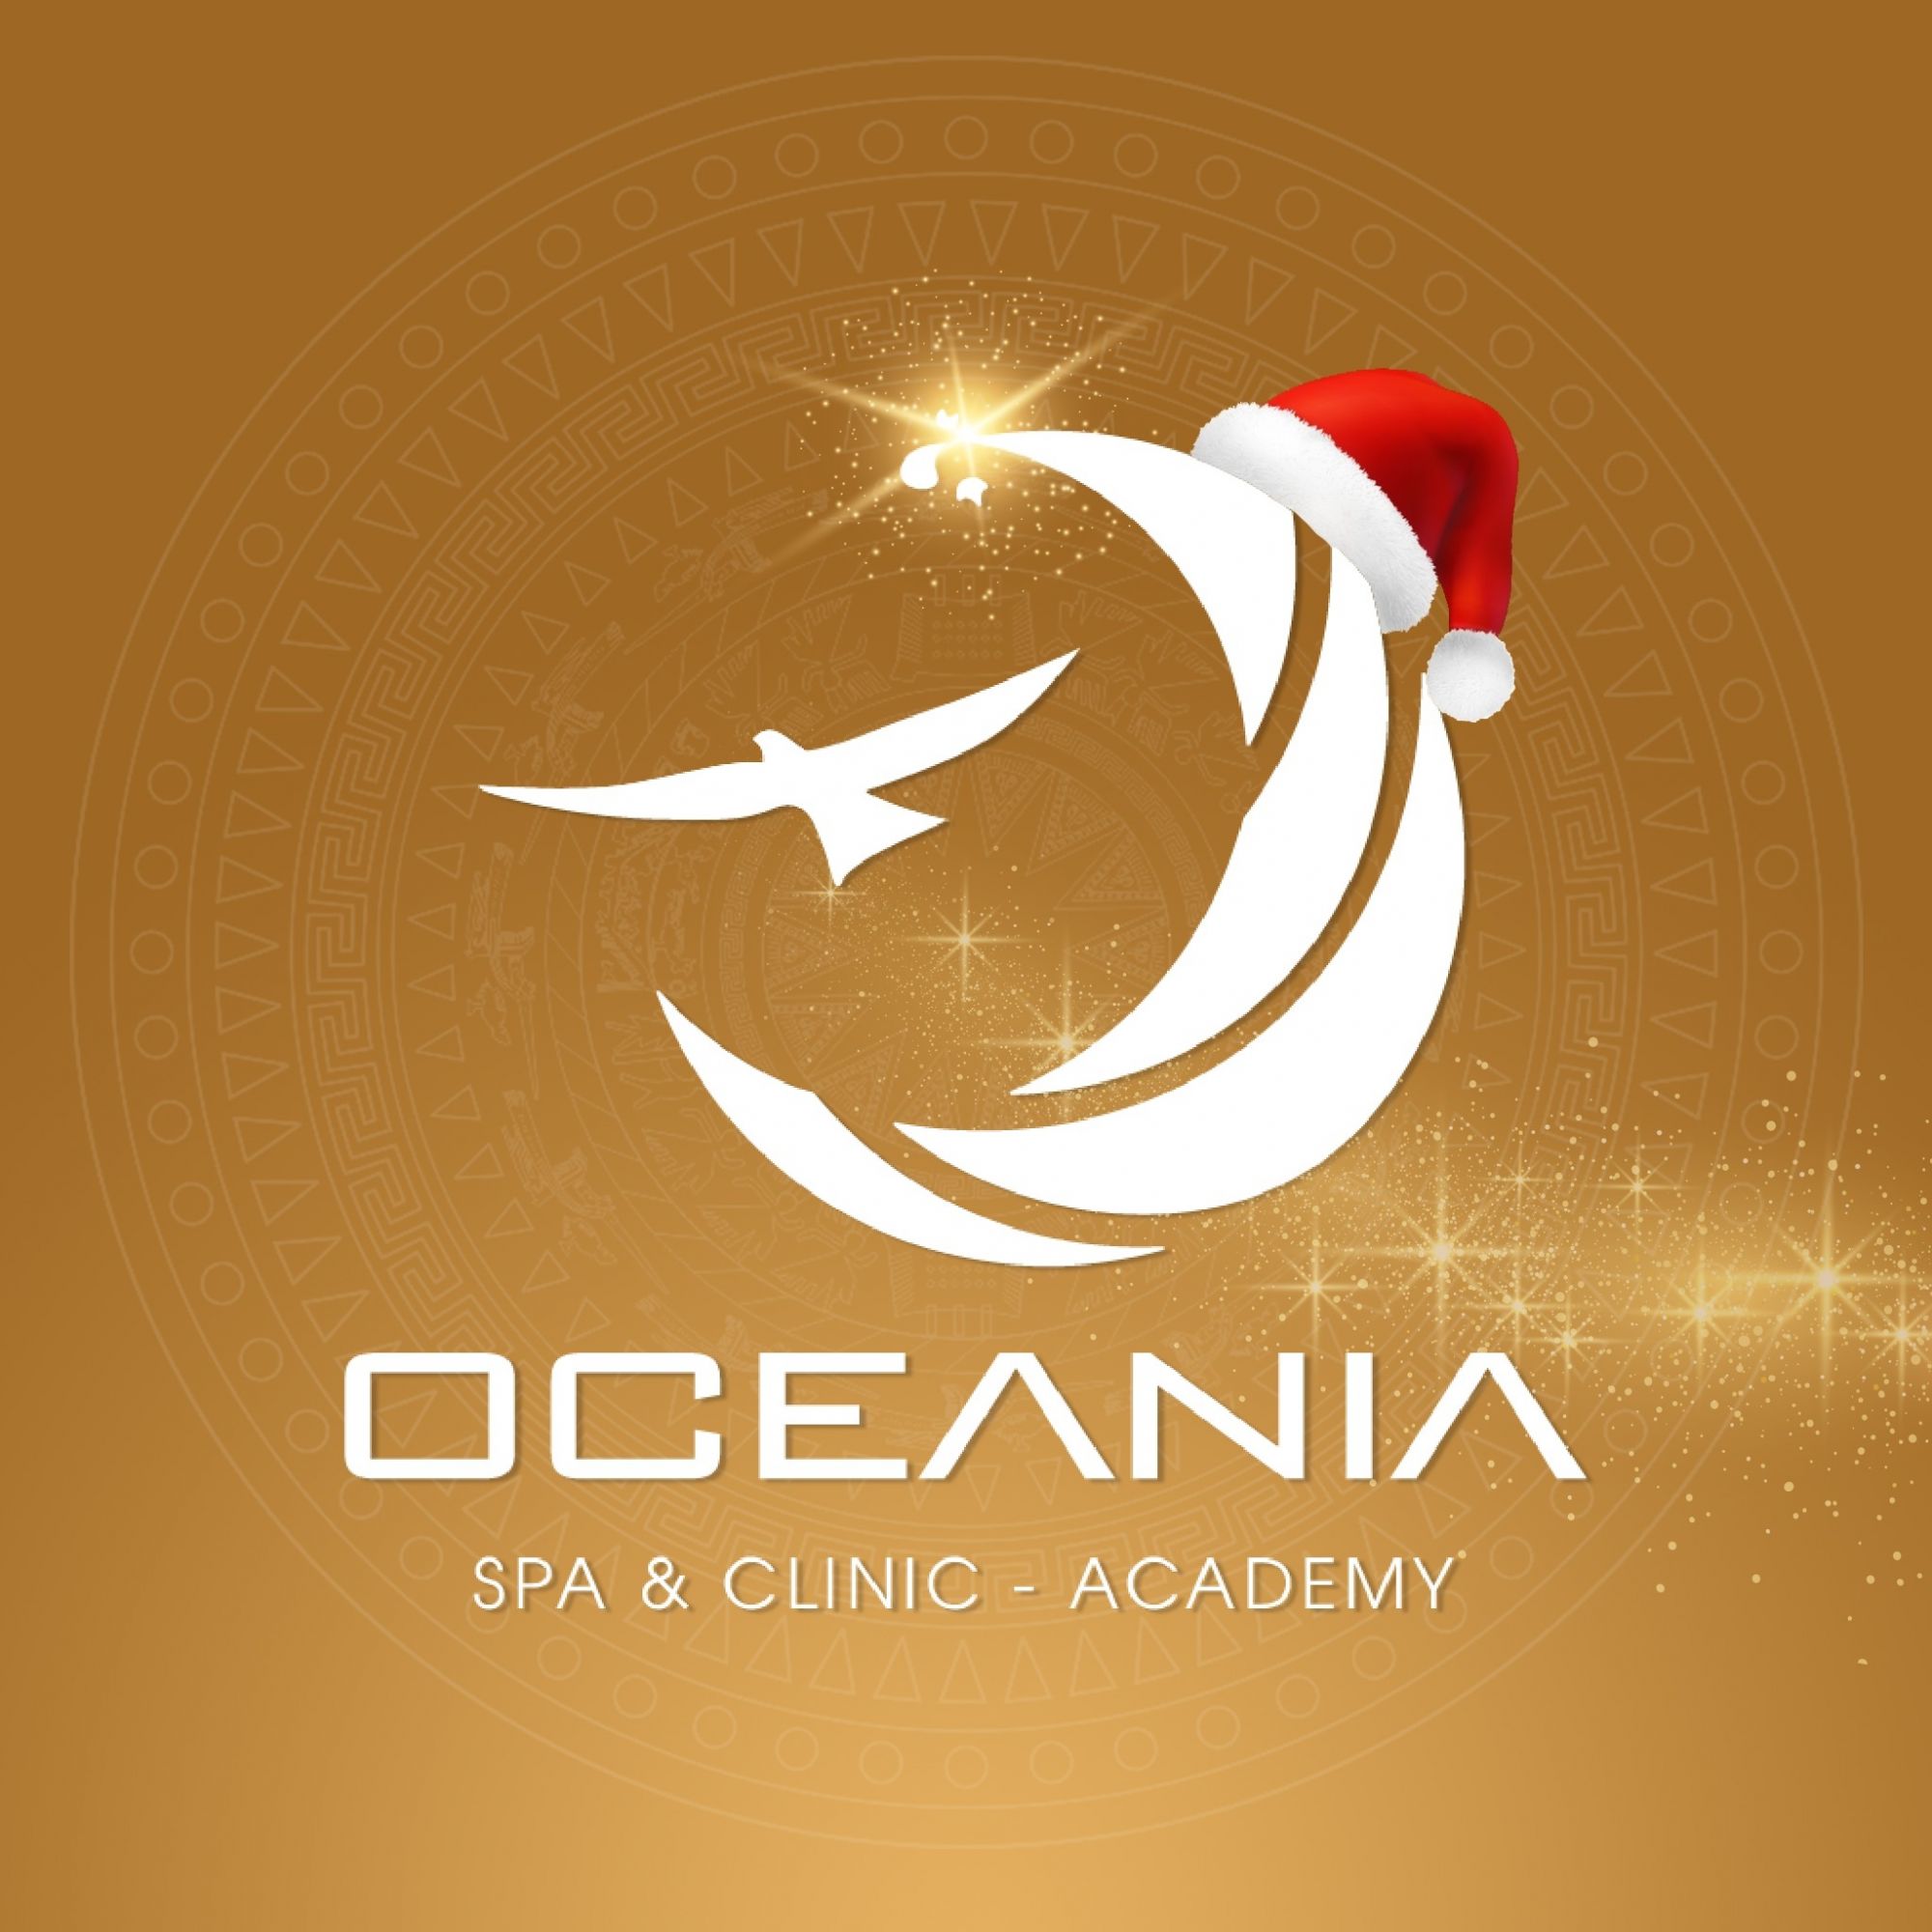 Oceania Spa & Clinic 